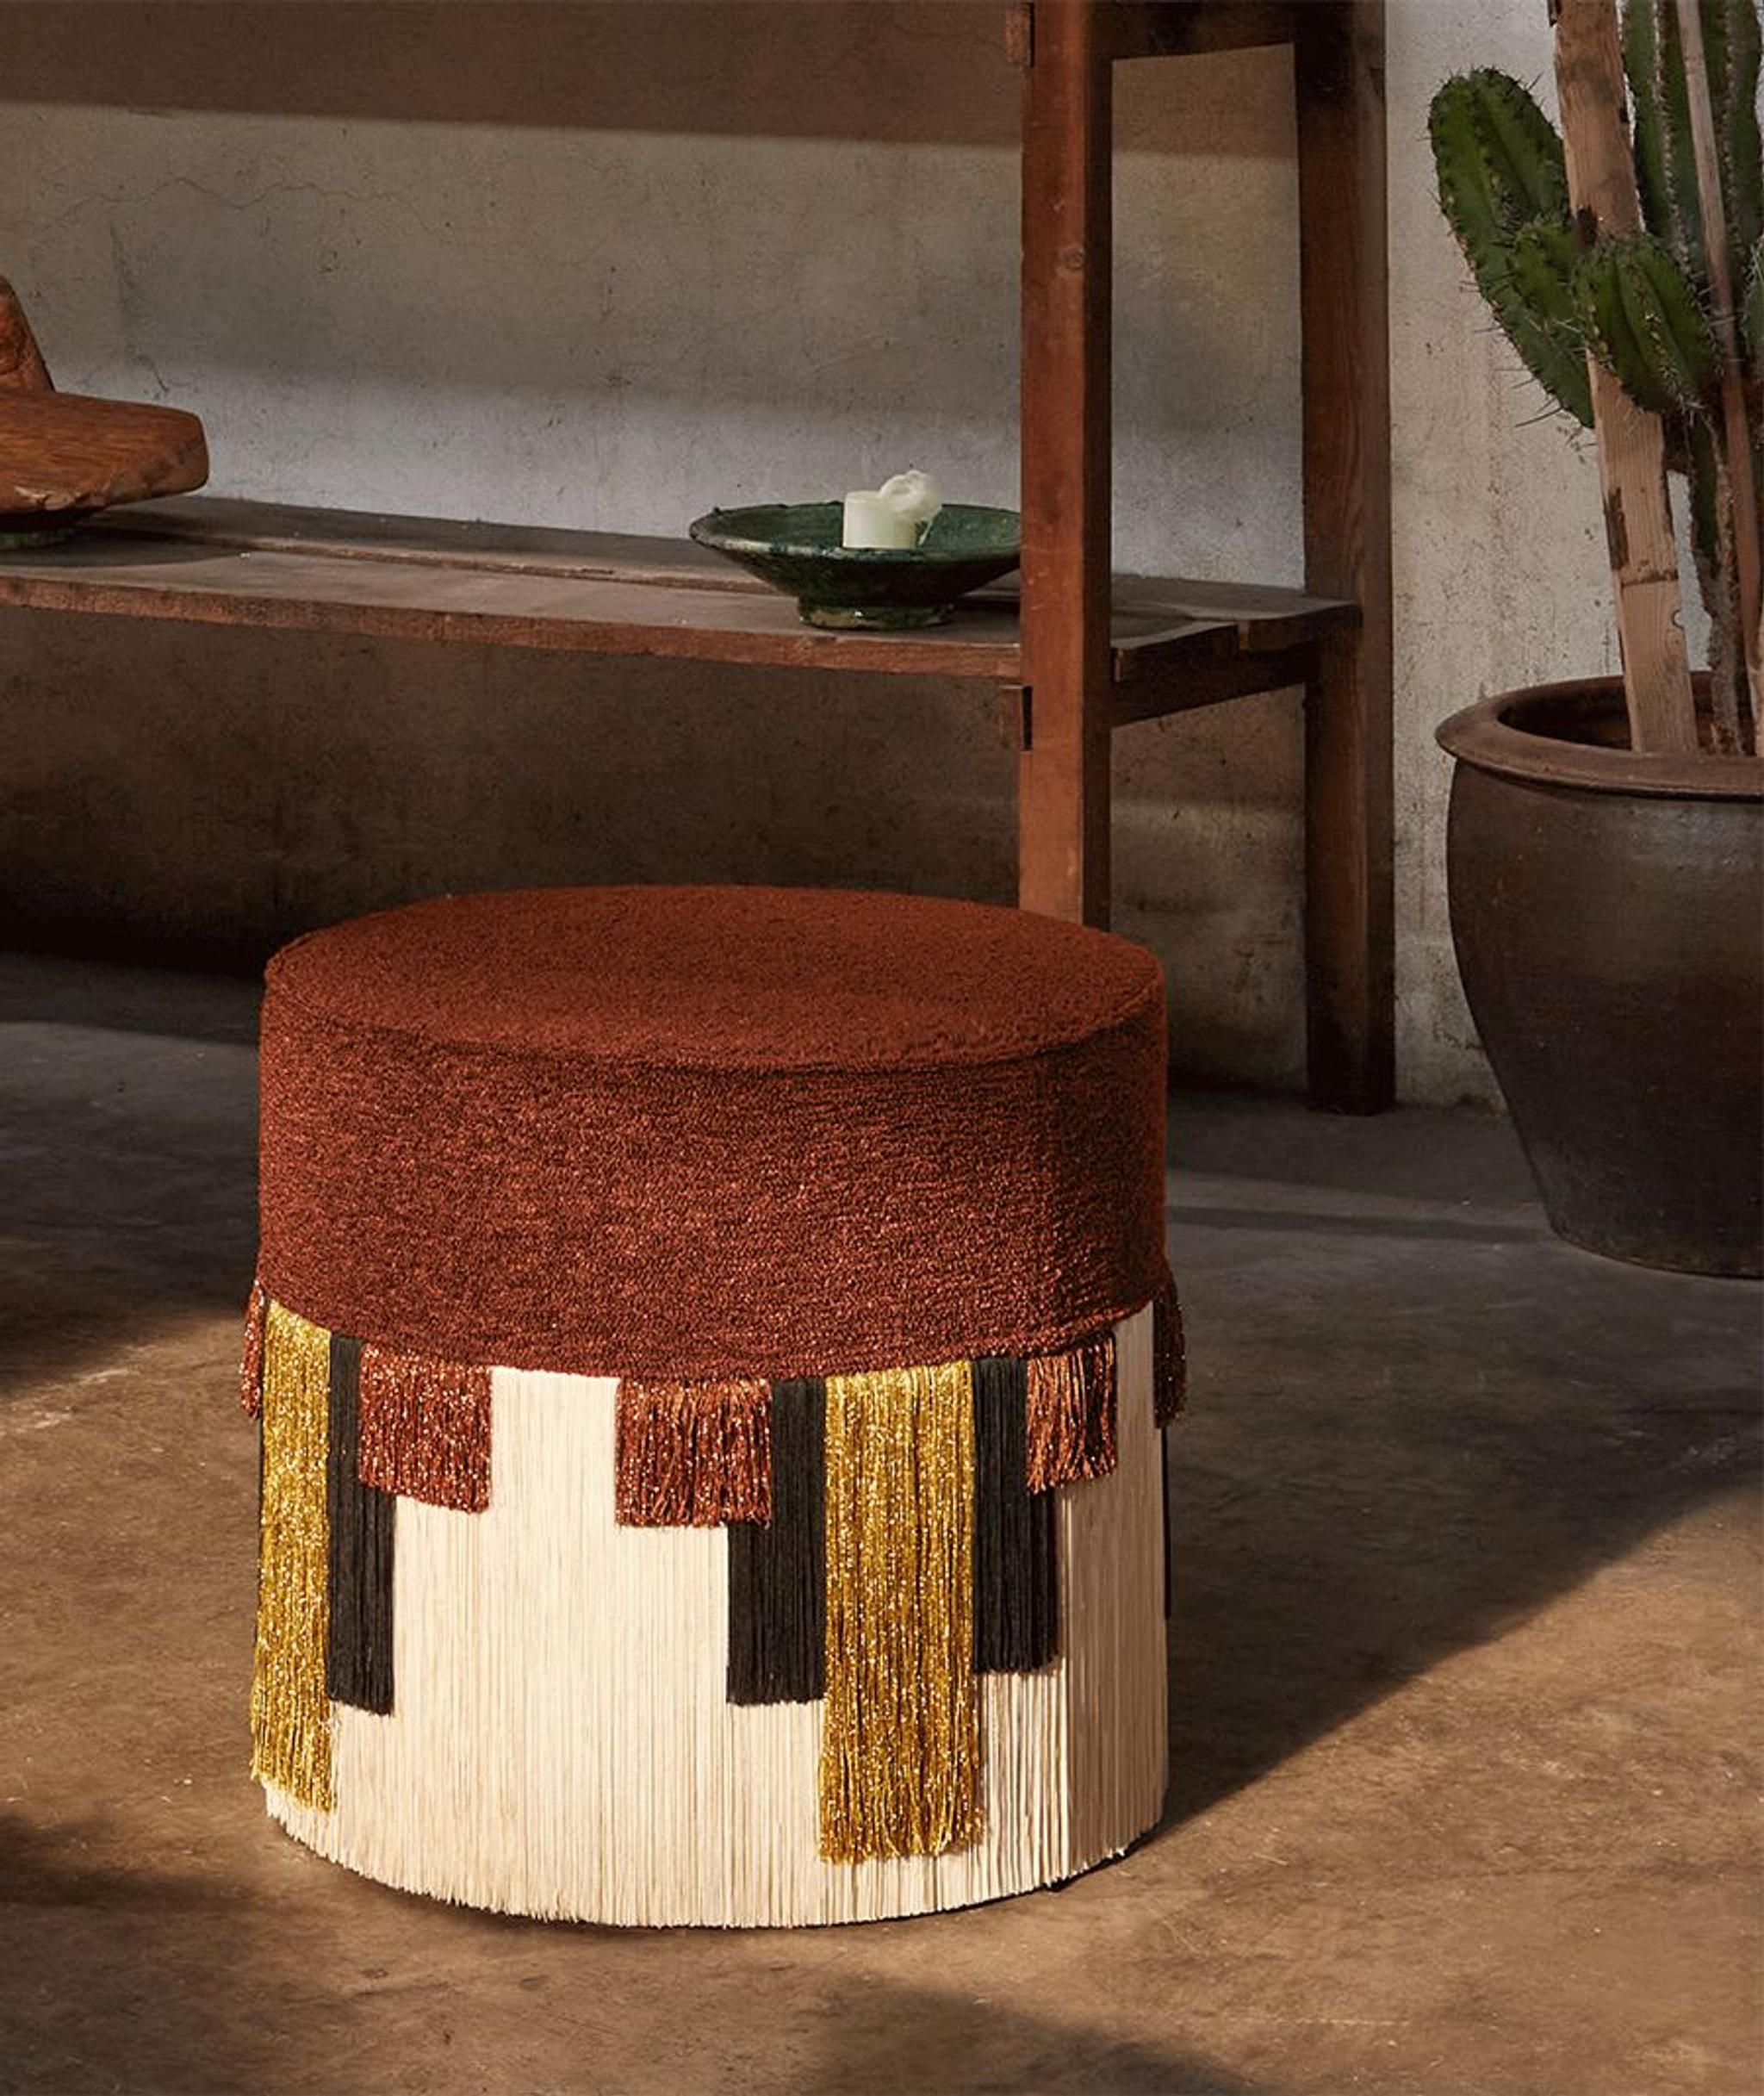 L'un des nombreux superbes accessoires de Lorenza Bozzoli, présentant un siège rembourré brun terreux, complété par une jupe à franges à motifs géométriques en viscose et lurex.